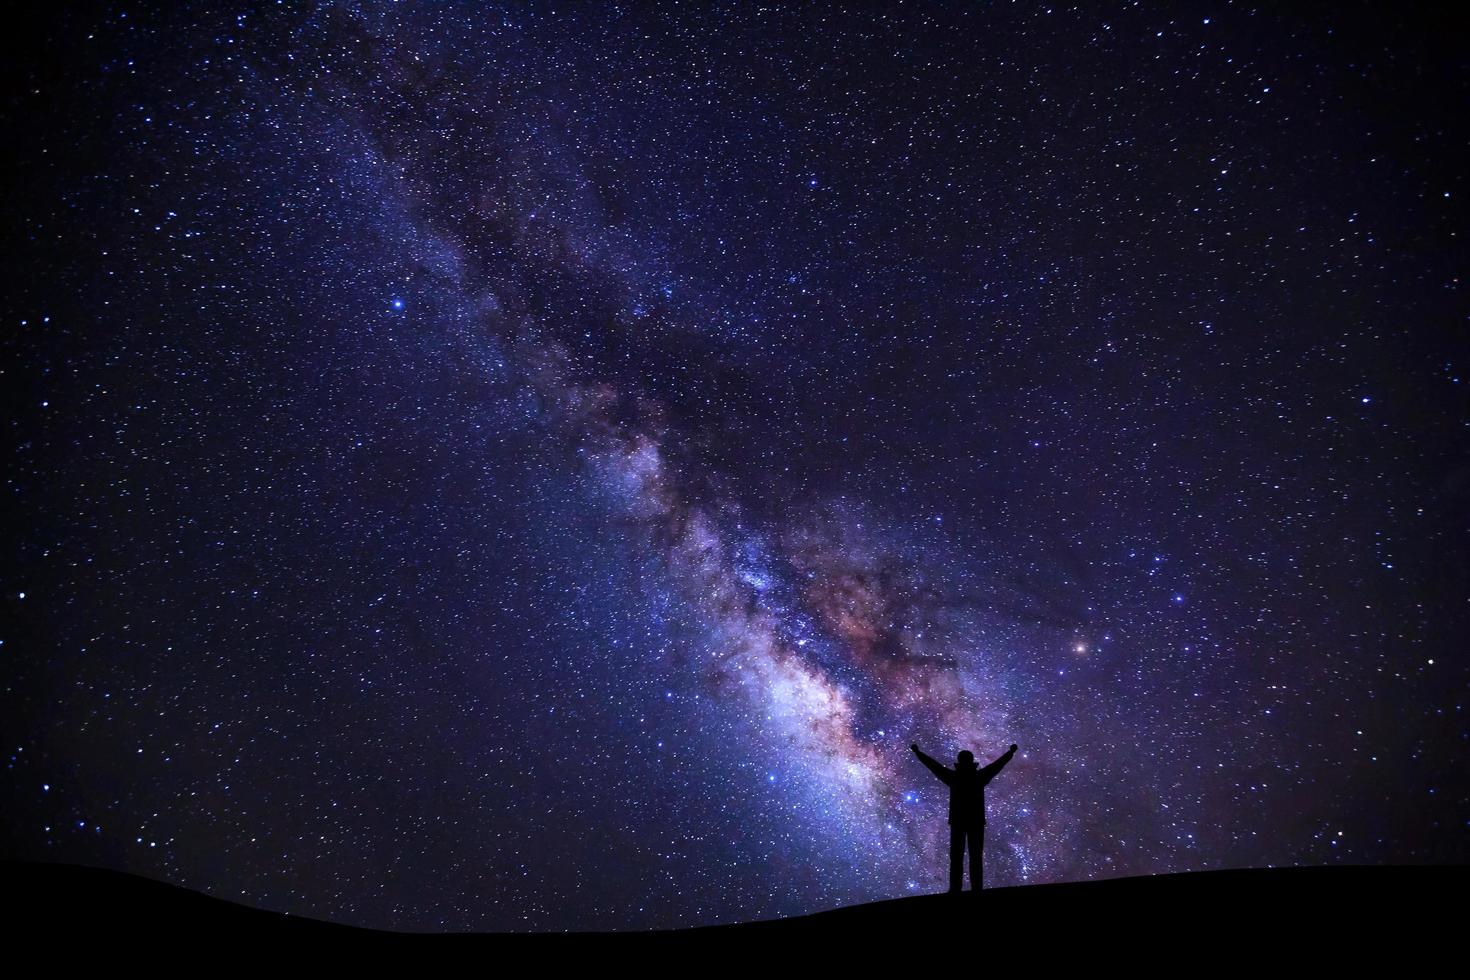 paysage avec voie lactée, ciel nocturne avec étoiles et silhouette d'un homme sportif debout avec les bras levés sur la haute montagne. photo